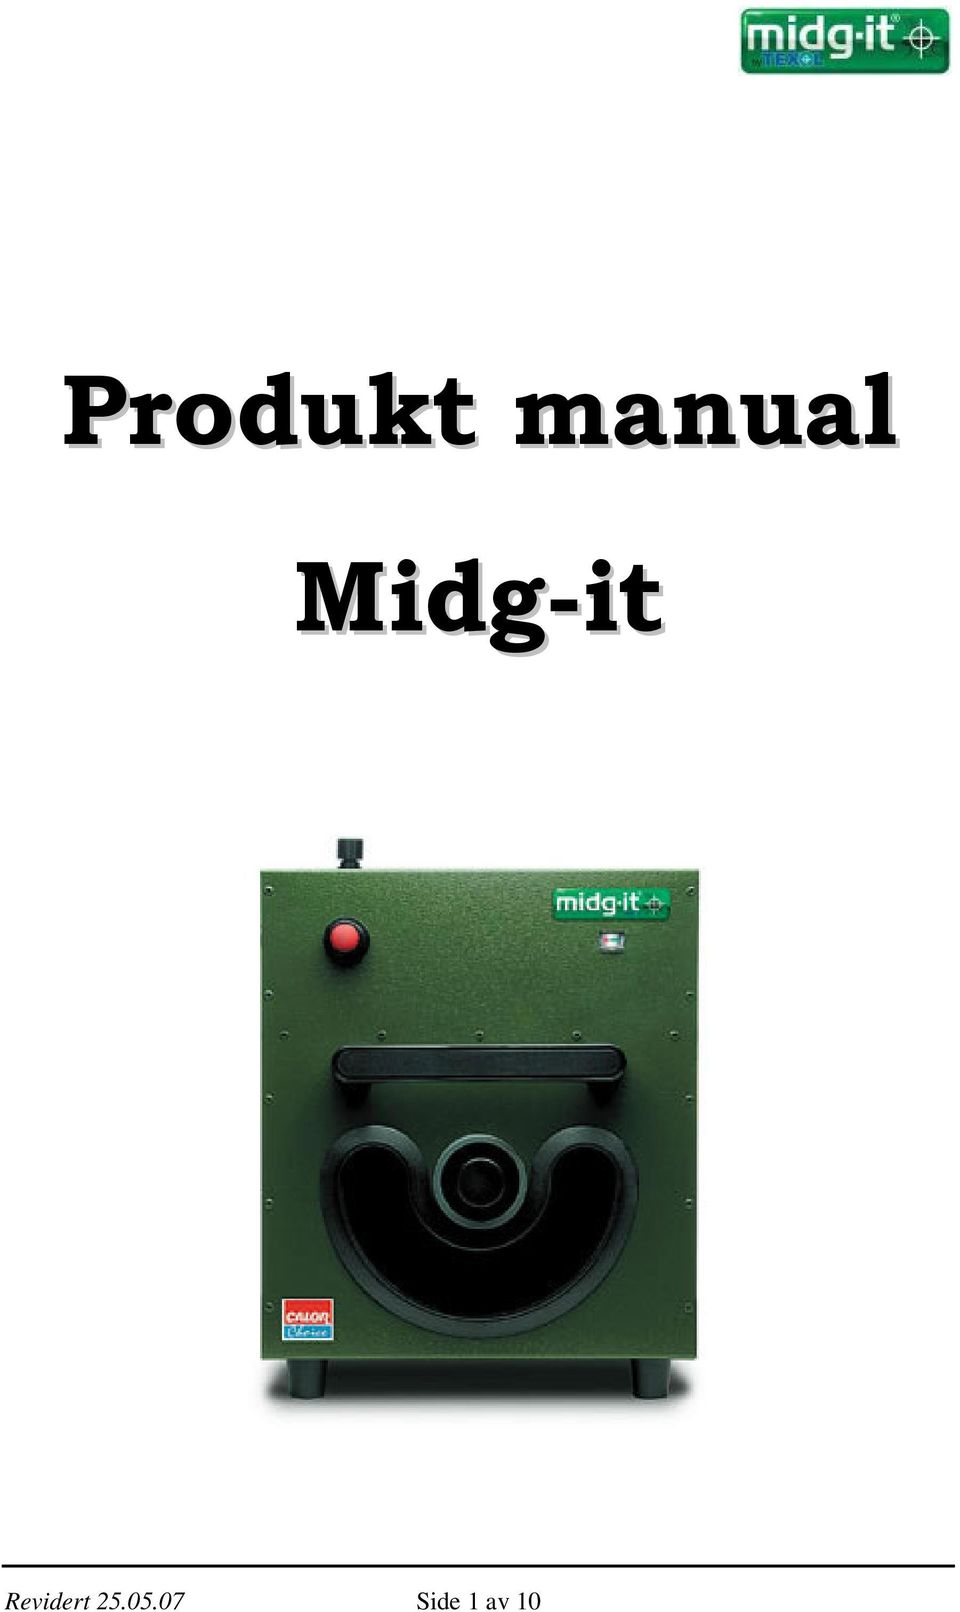 Midg-it